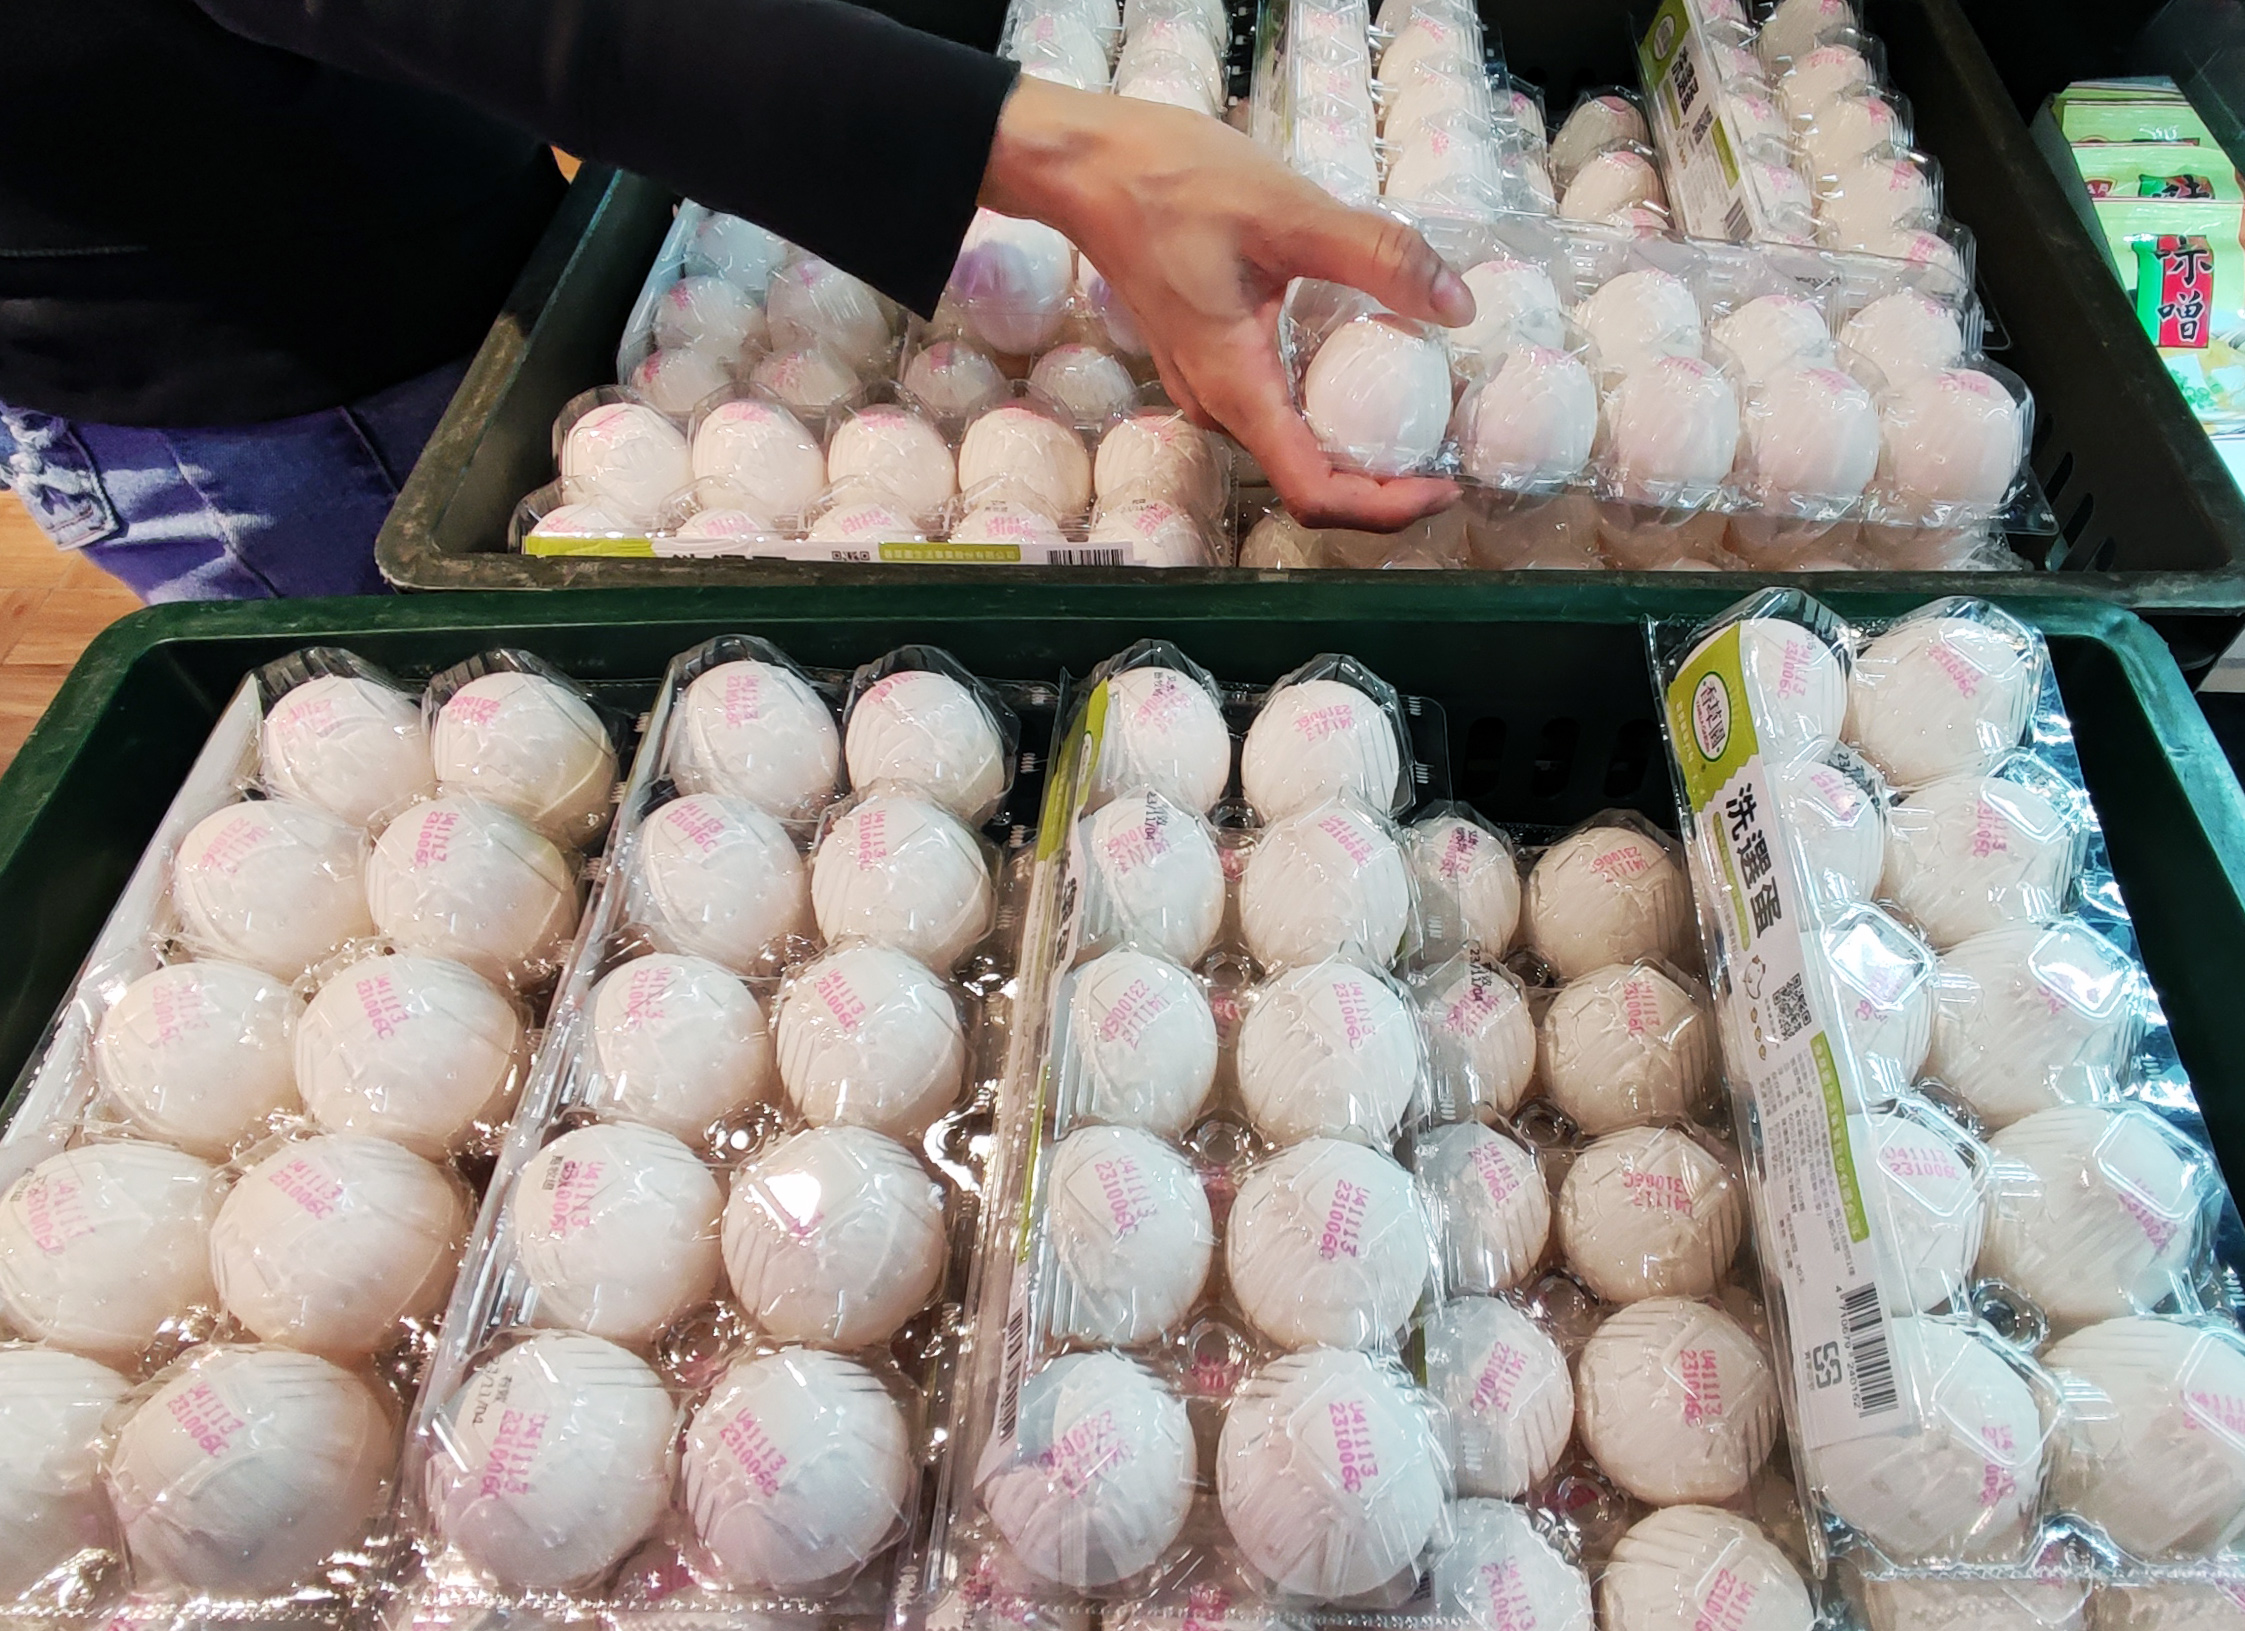 农业部去年专案进口鸡蛋过程引发争议，目前超过5500万颗待堆肥化处理。示意图。记者杜建重／摄影